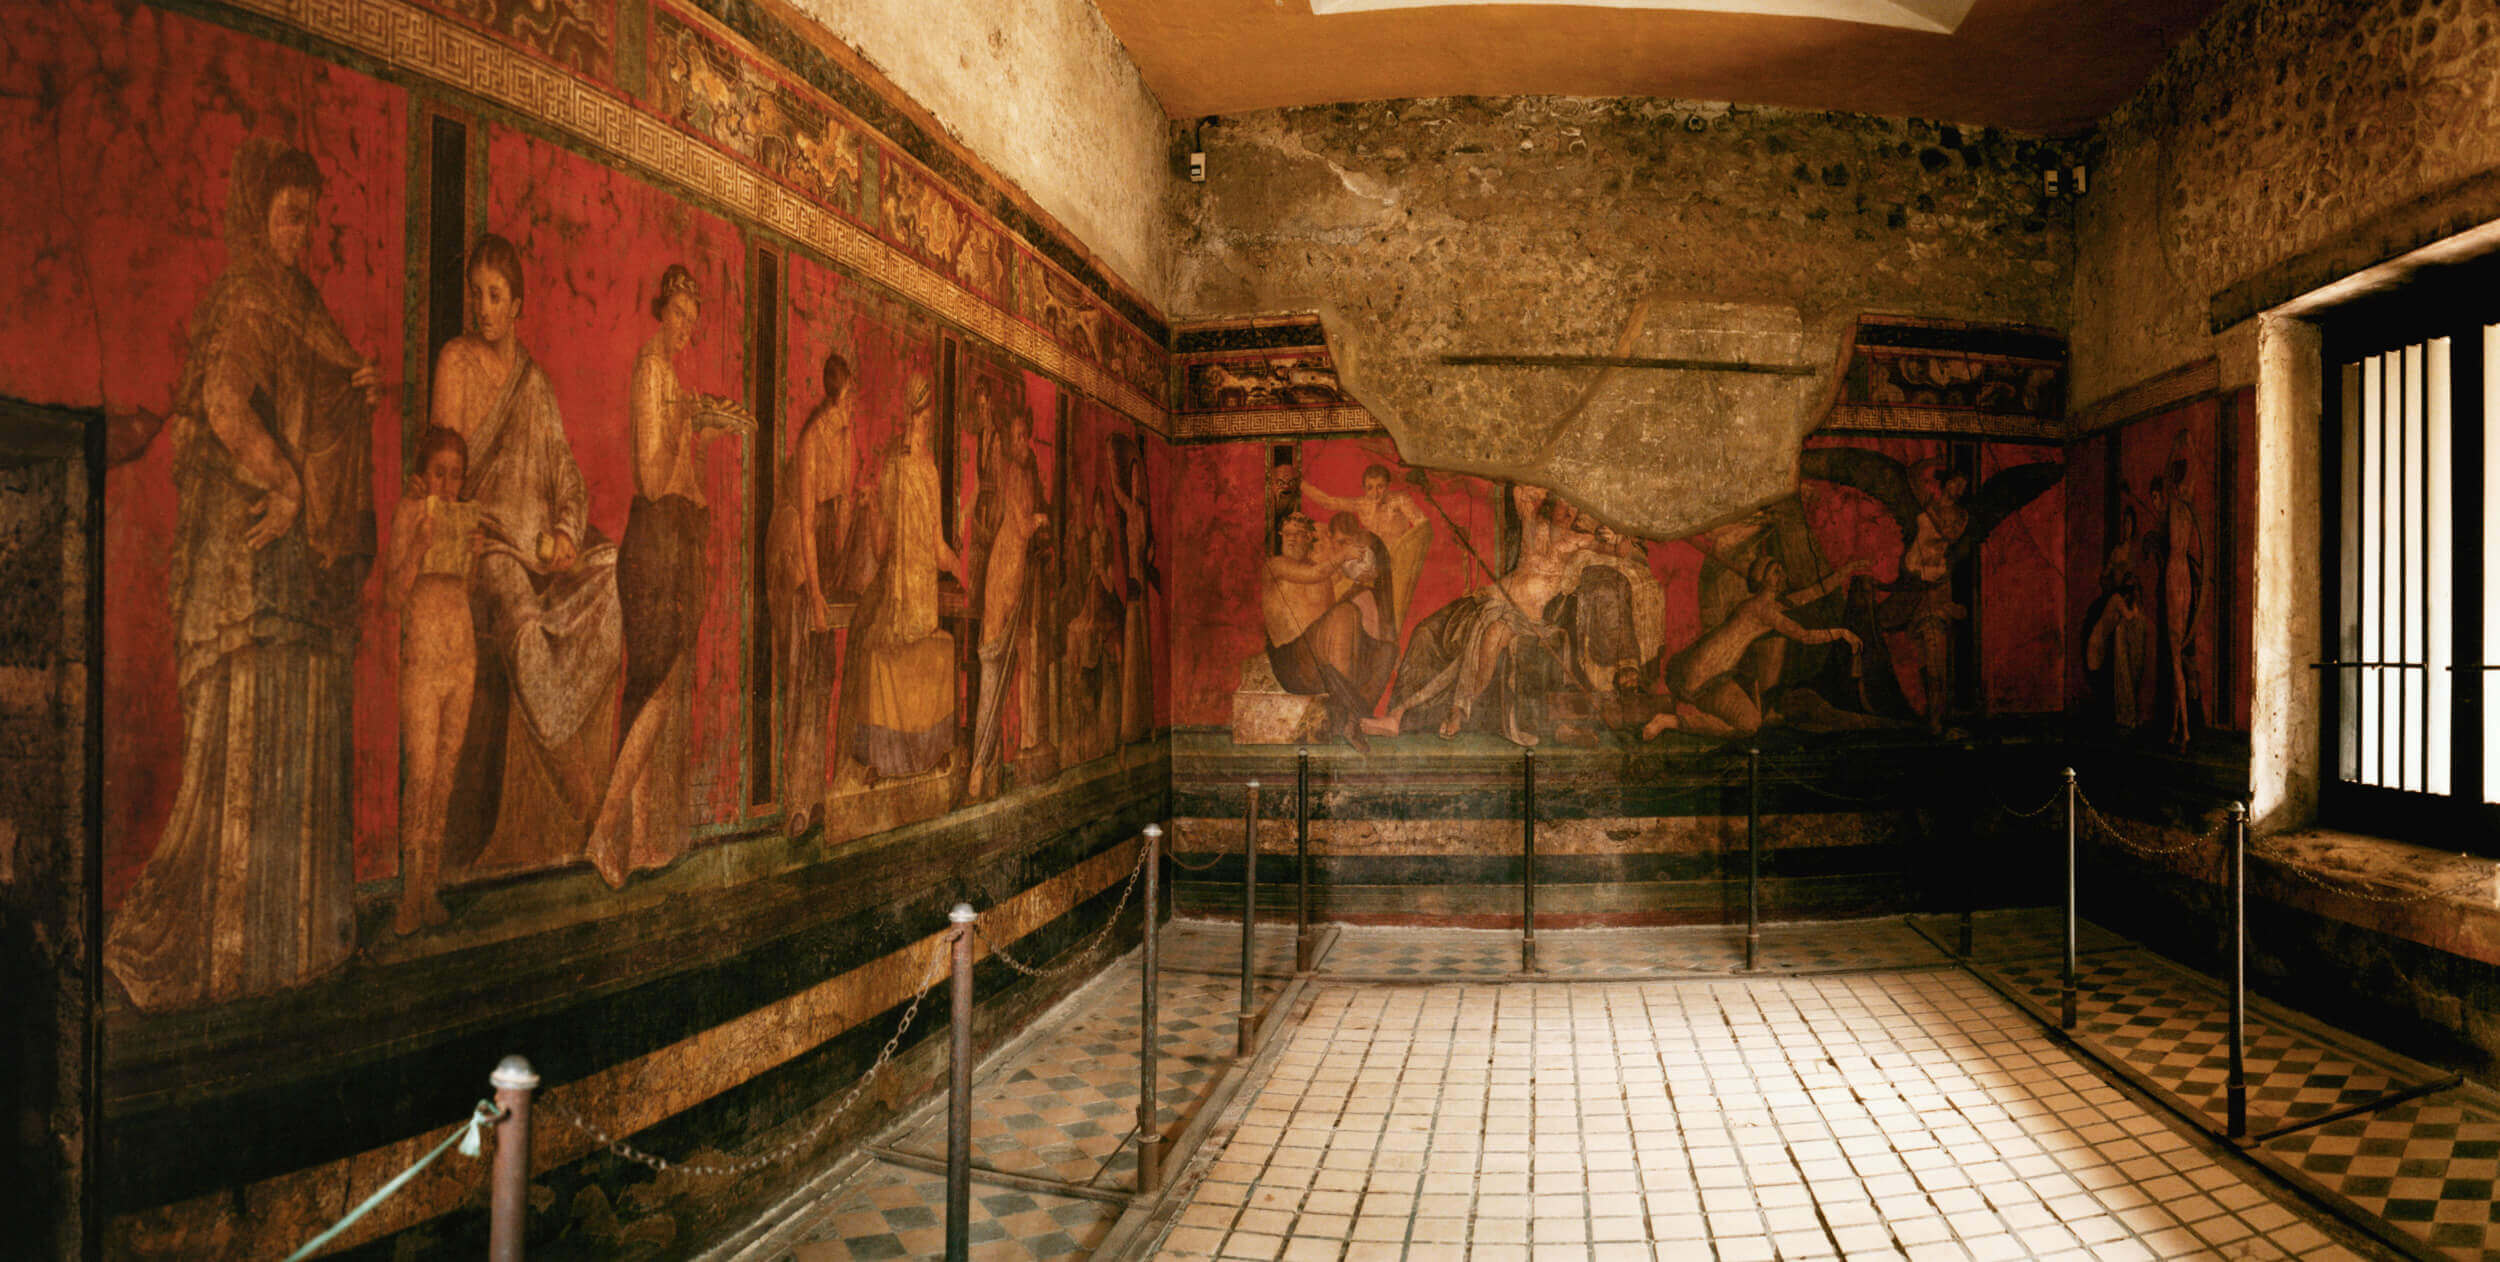 Thiết kế nội thất thời kỳ Roman 753TCN – 480 sau Công Nguyên